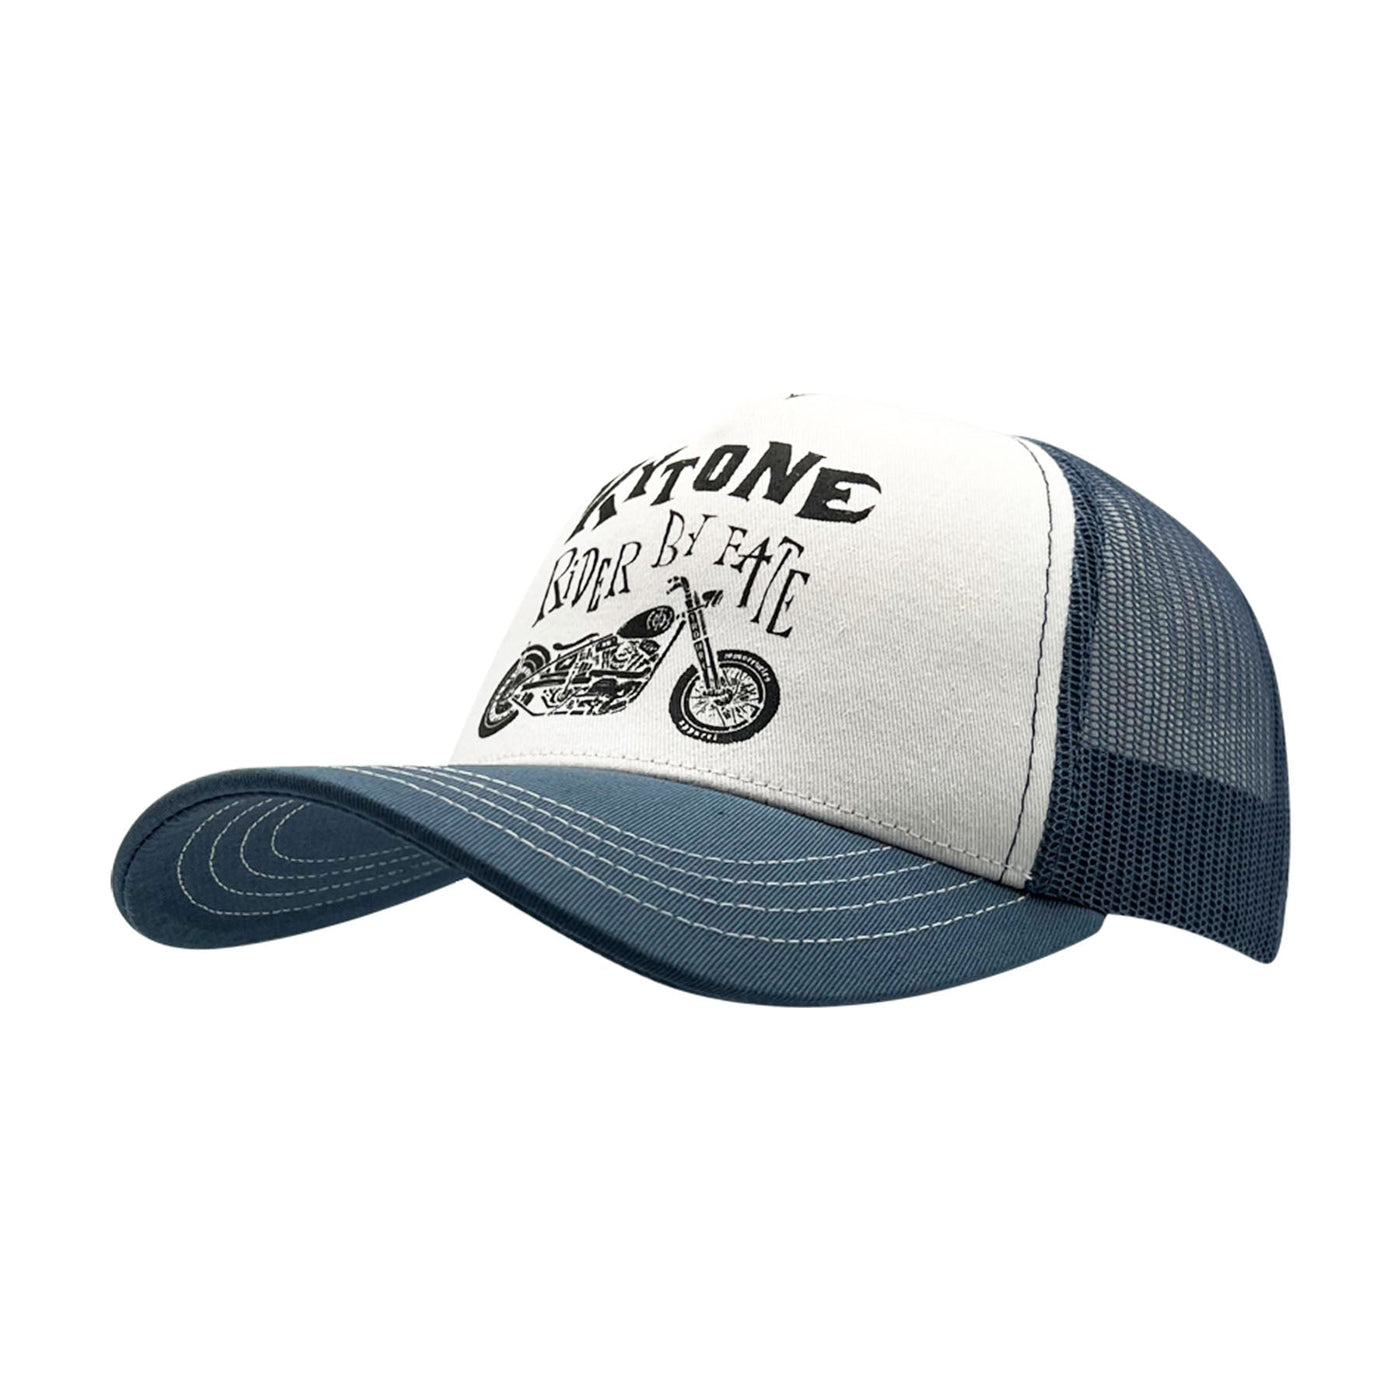 Kytone Cap Rider